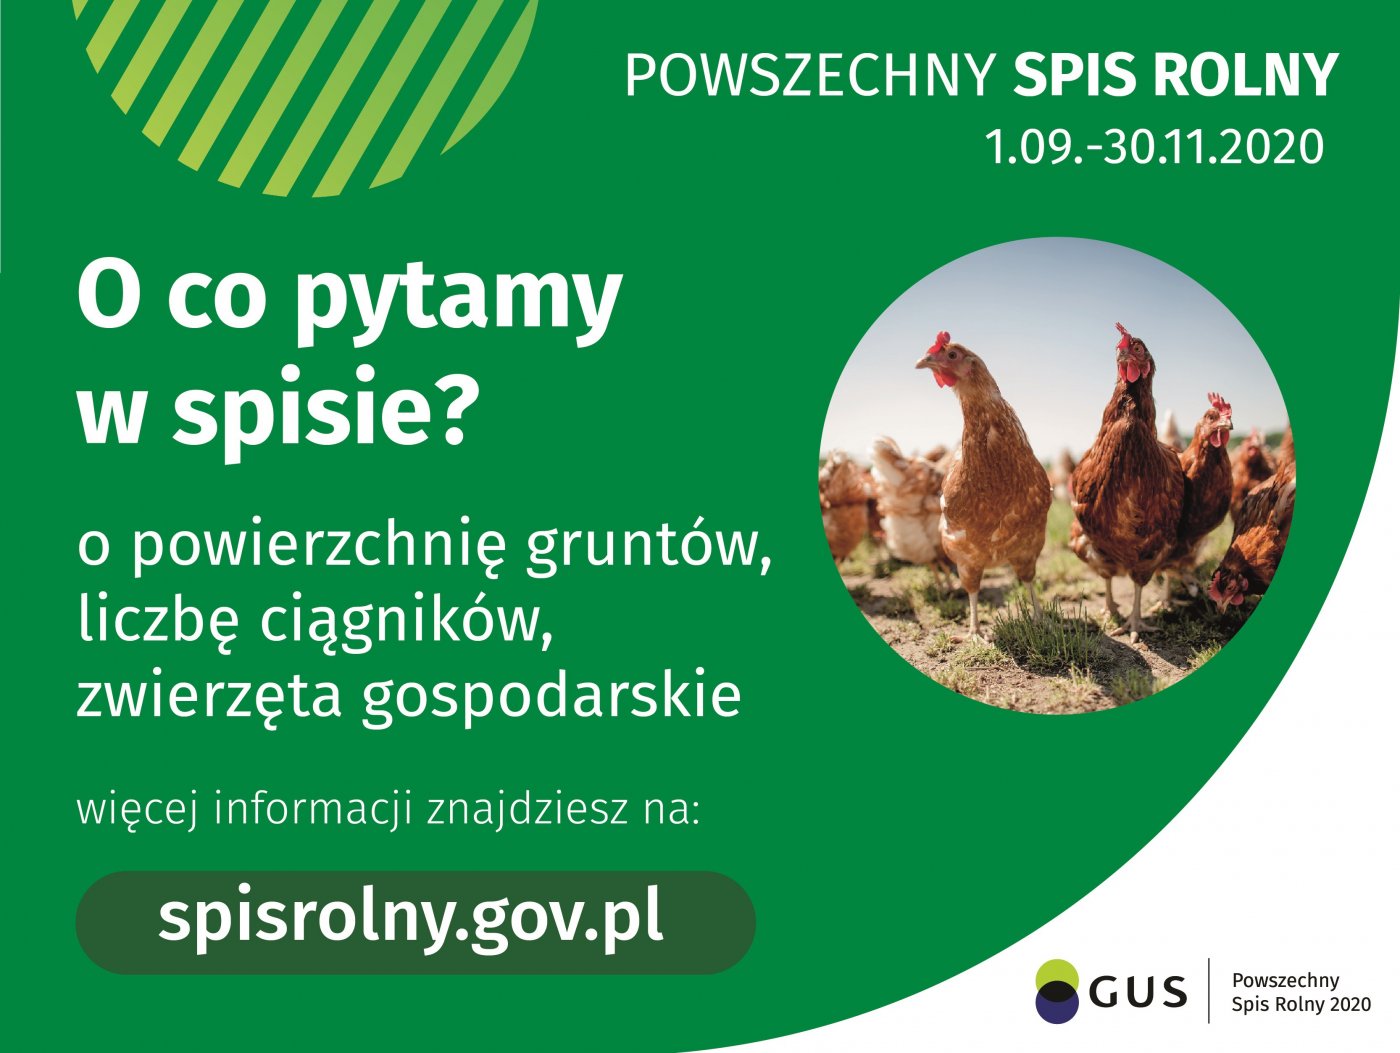 Powszechny Spis Rolny  01.09-30.11.2020
O co pytamy w spisie? 
o powierzchnię gruntów, liczbę ciągników, zwierzęta gospodarcze

Więcej informacji znajdziesz na:
spisrolny.gov.pl